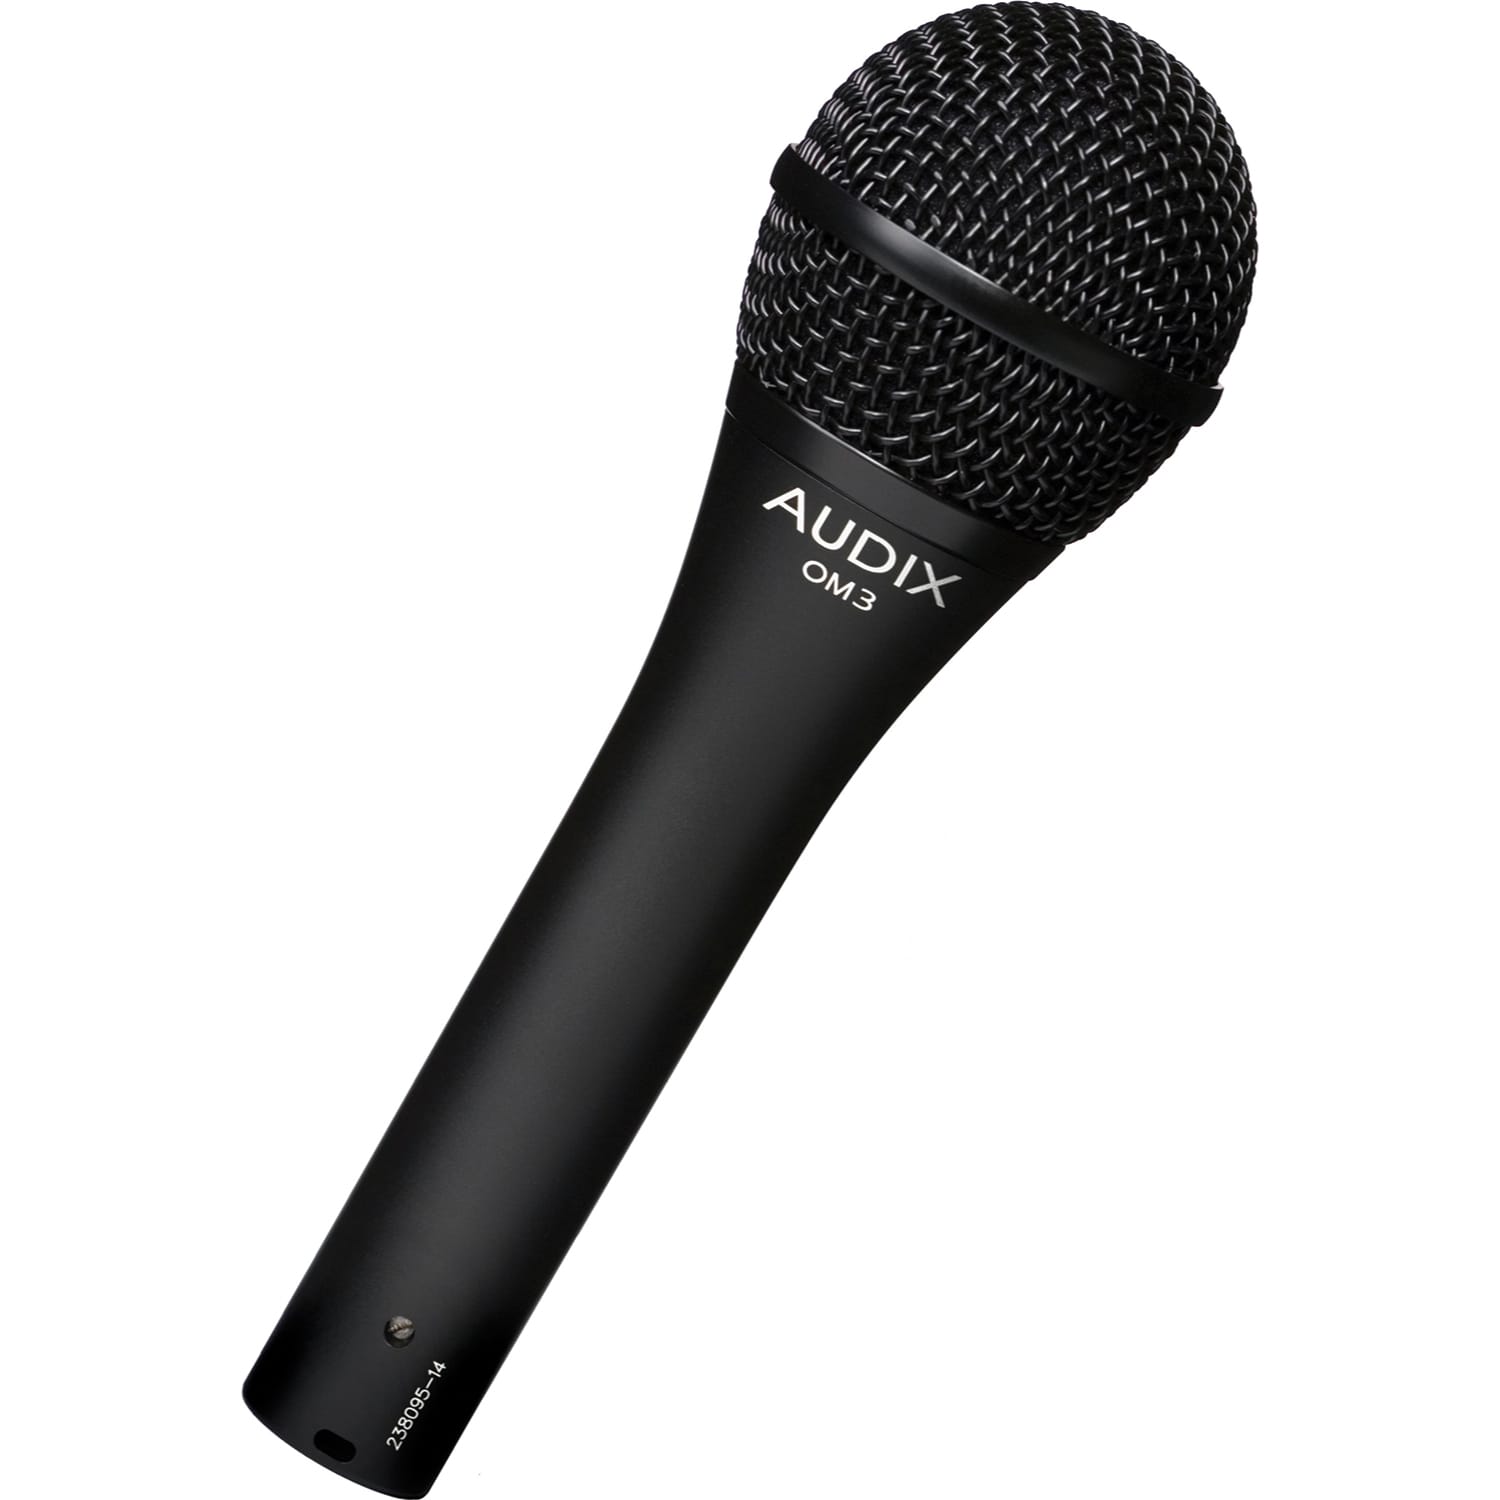 Audix Om3 - Vocal microphones - Variation 1